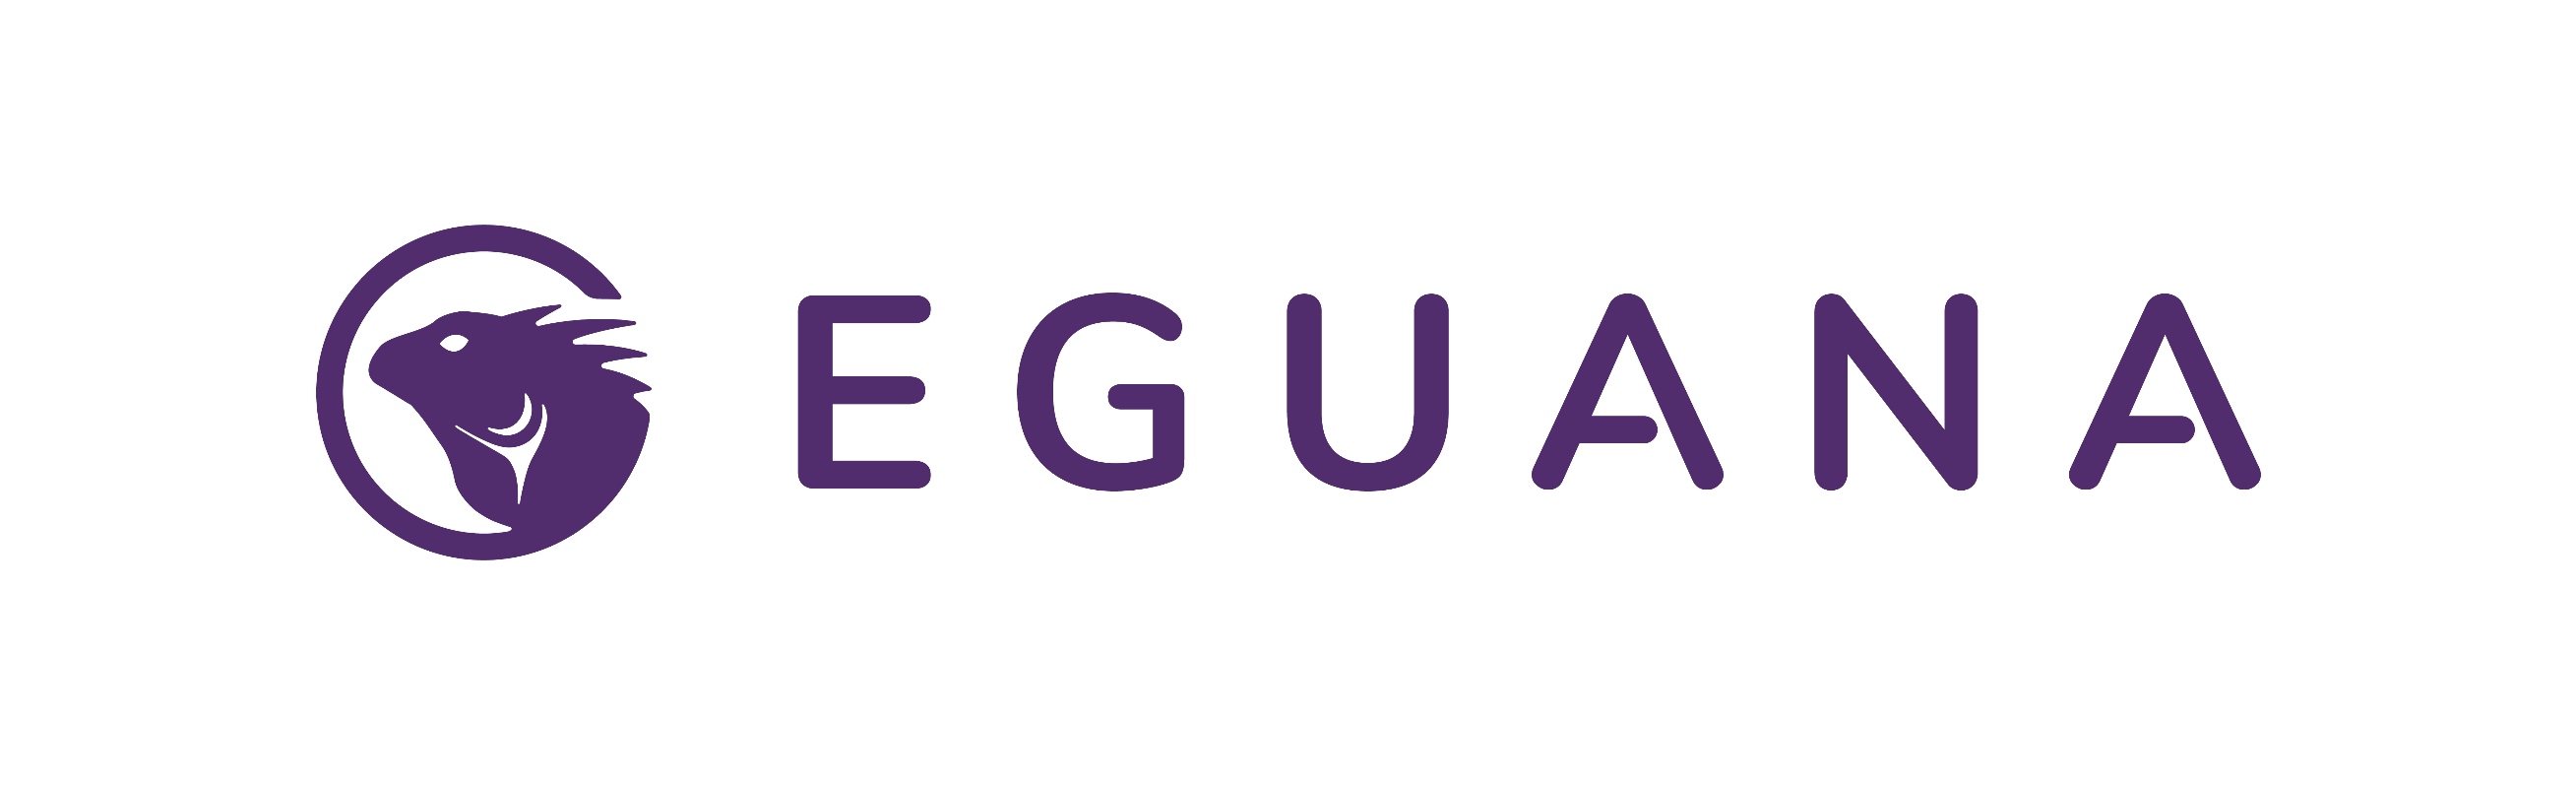 Eguana Logo.png